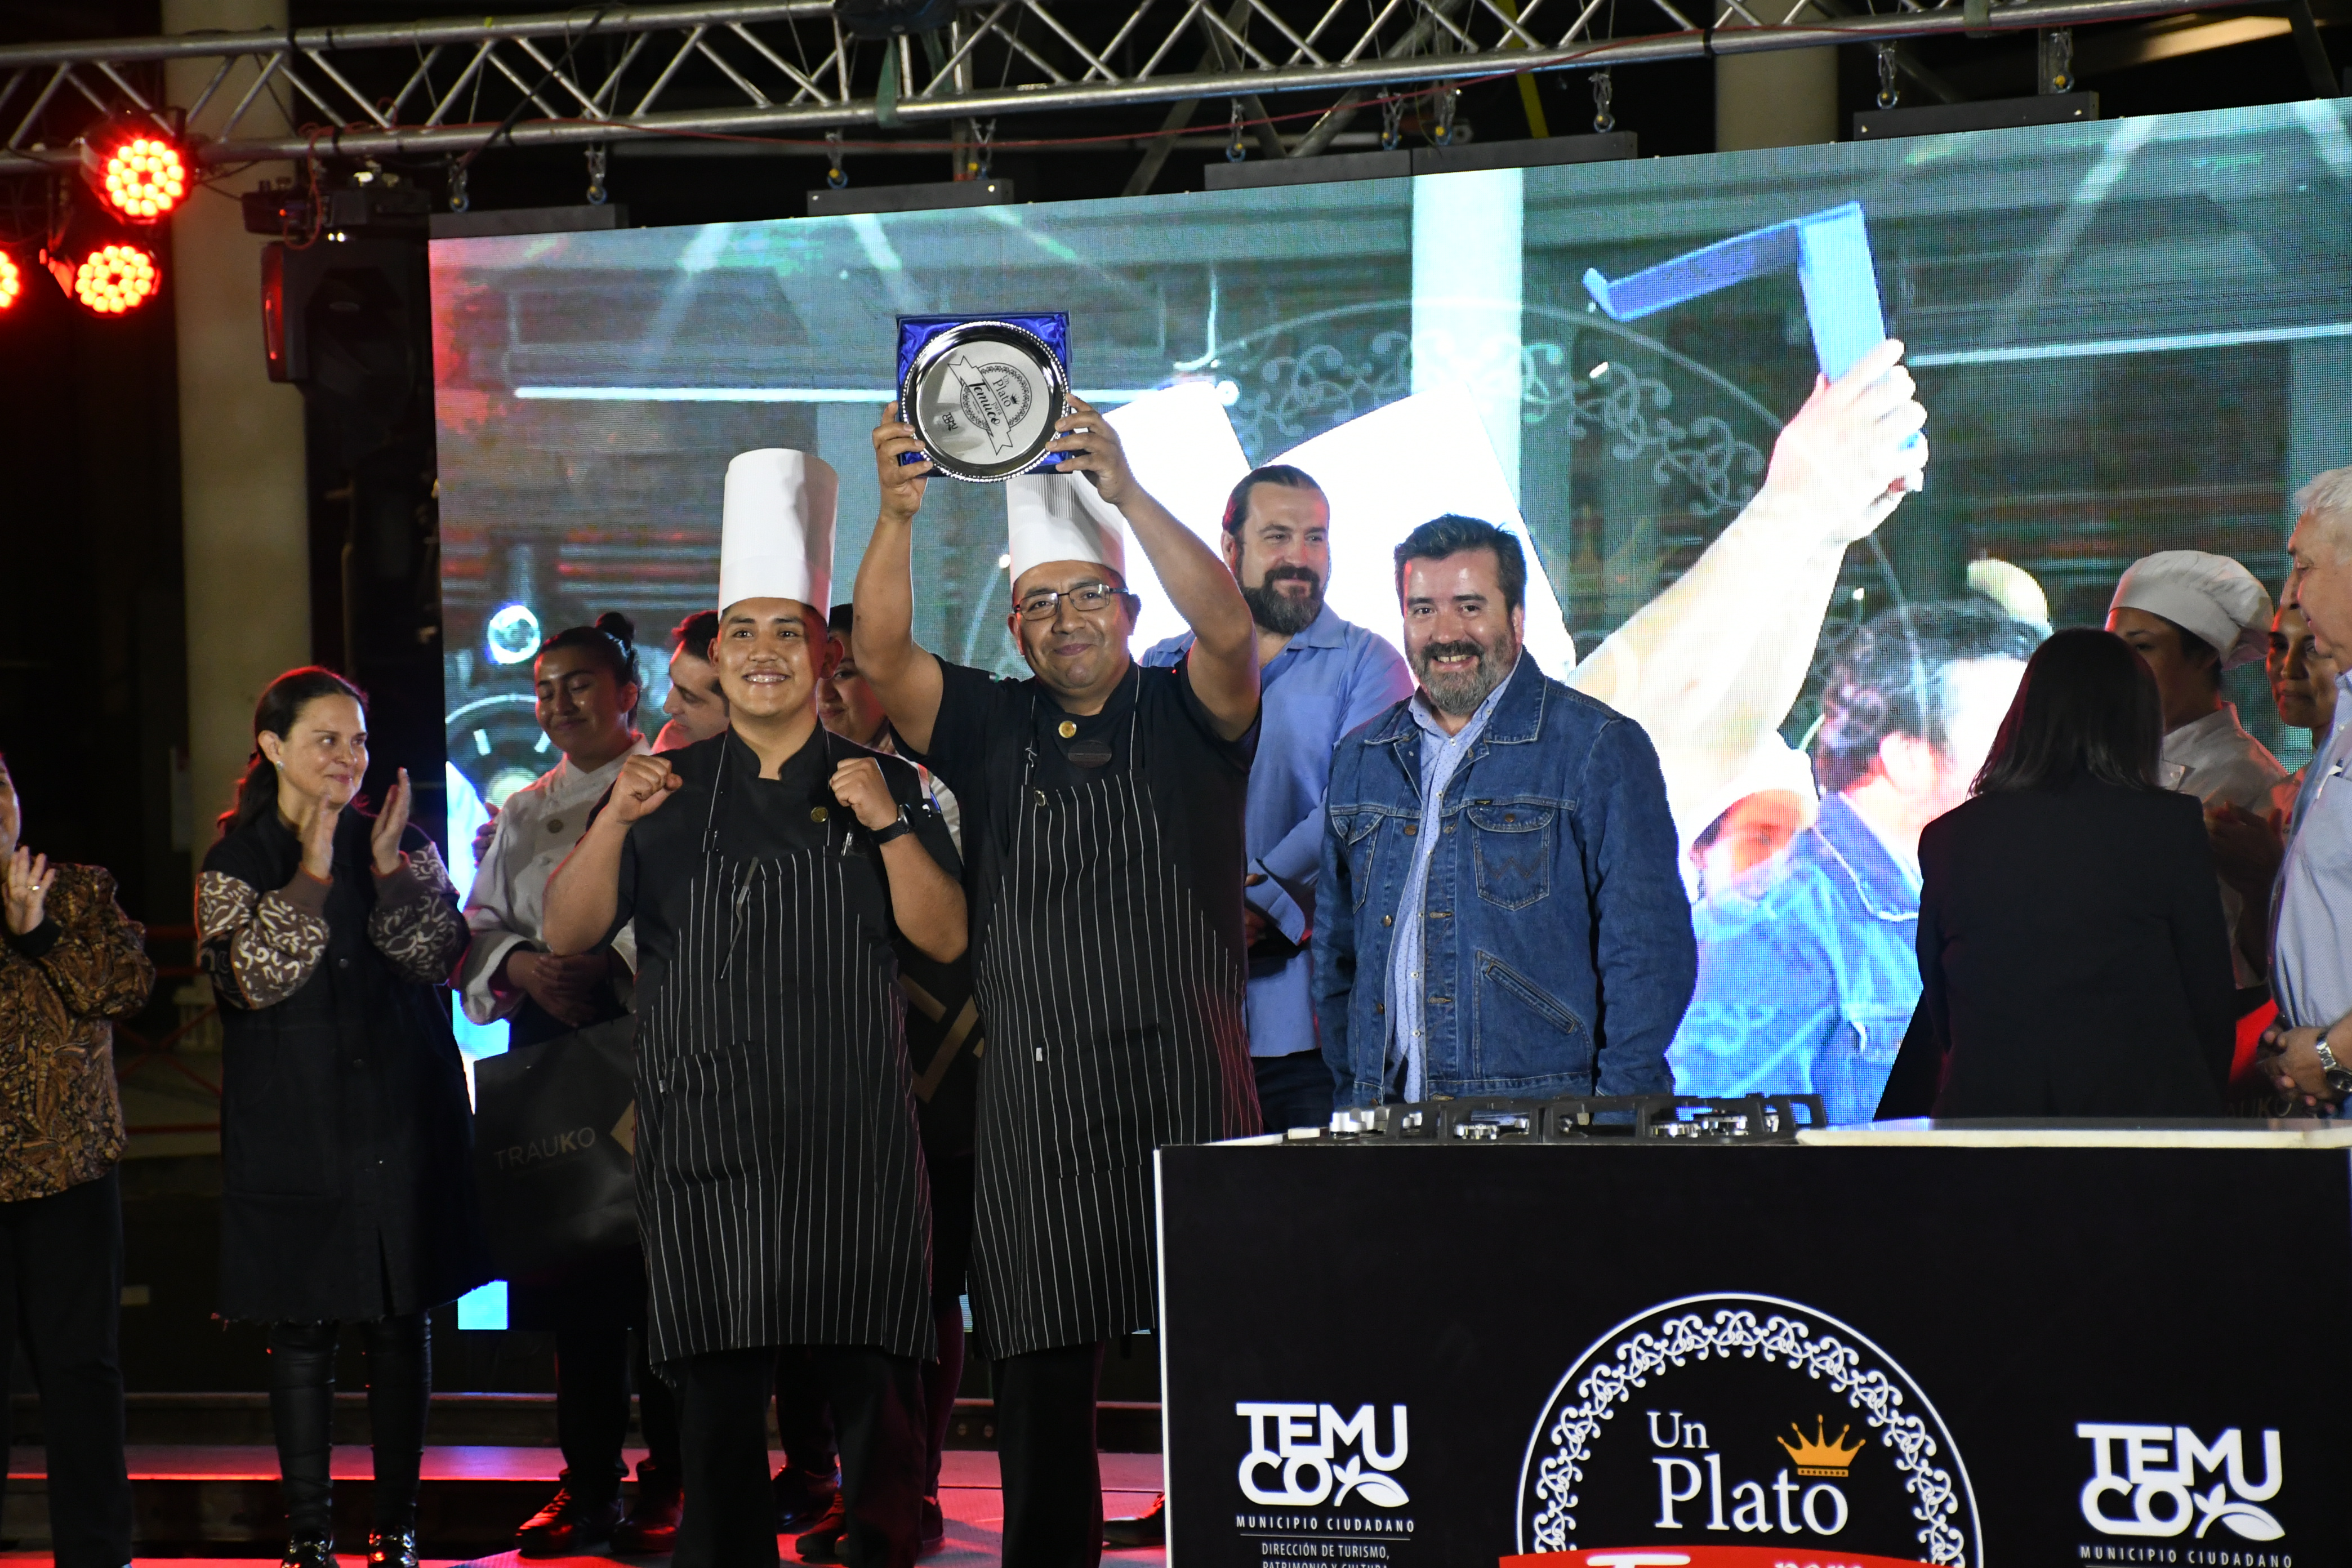 Imagen Torneo gastronómico definió un plato representativo para Temuco